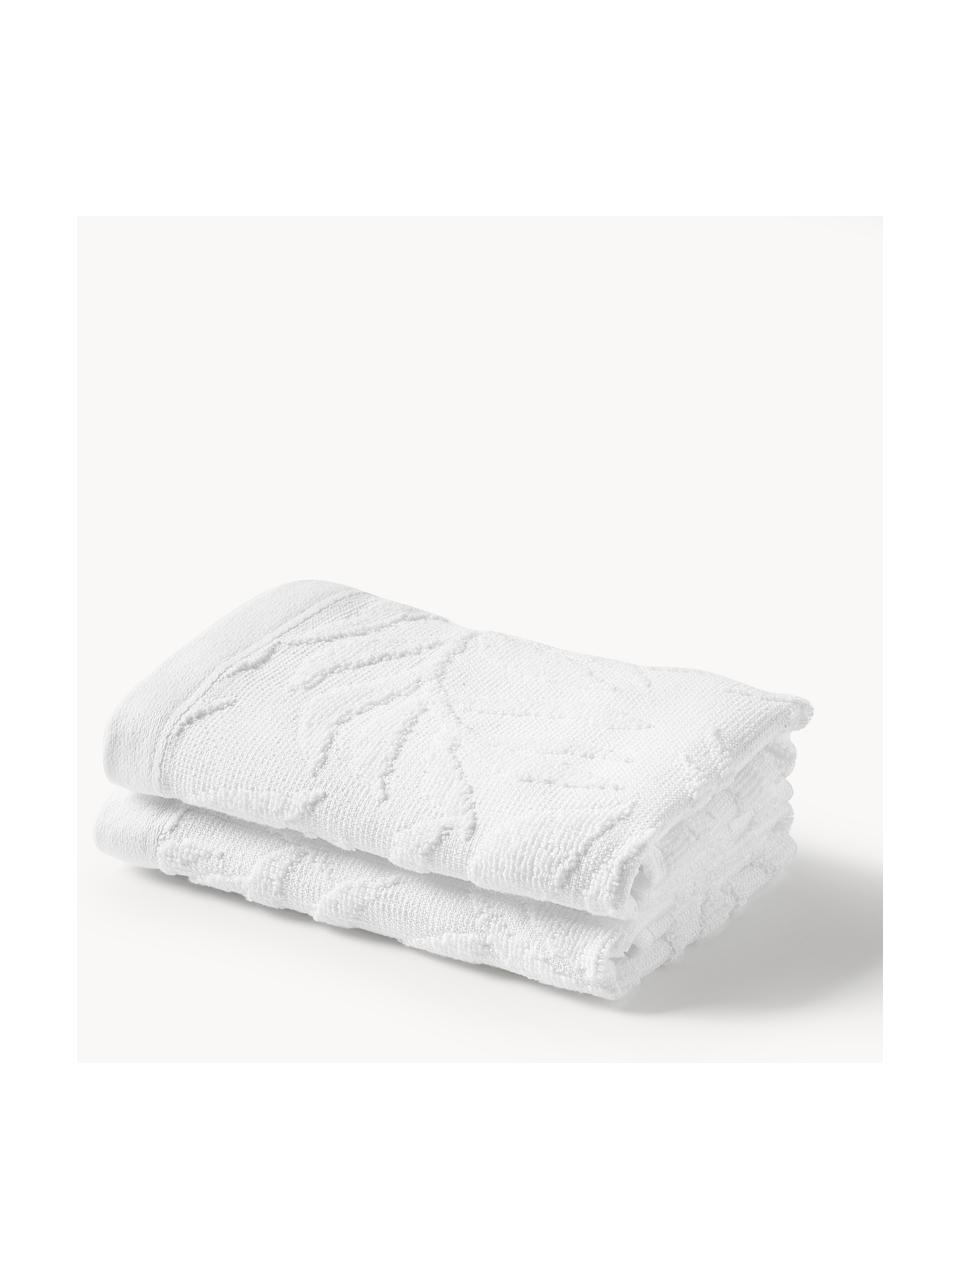 Toallas de algodón Leaf, tamaños diferentes, Blanco, Set de 3 (toalla tocador, toalla lavabo y toalla ducha)